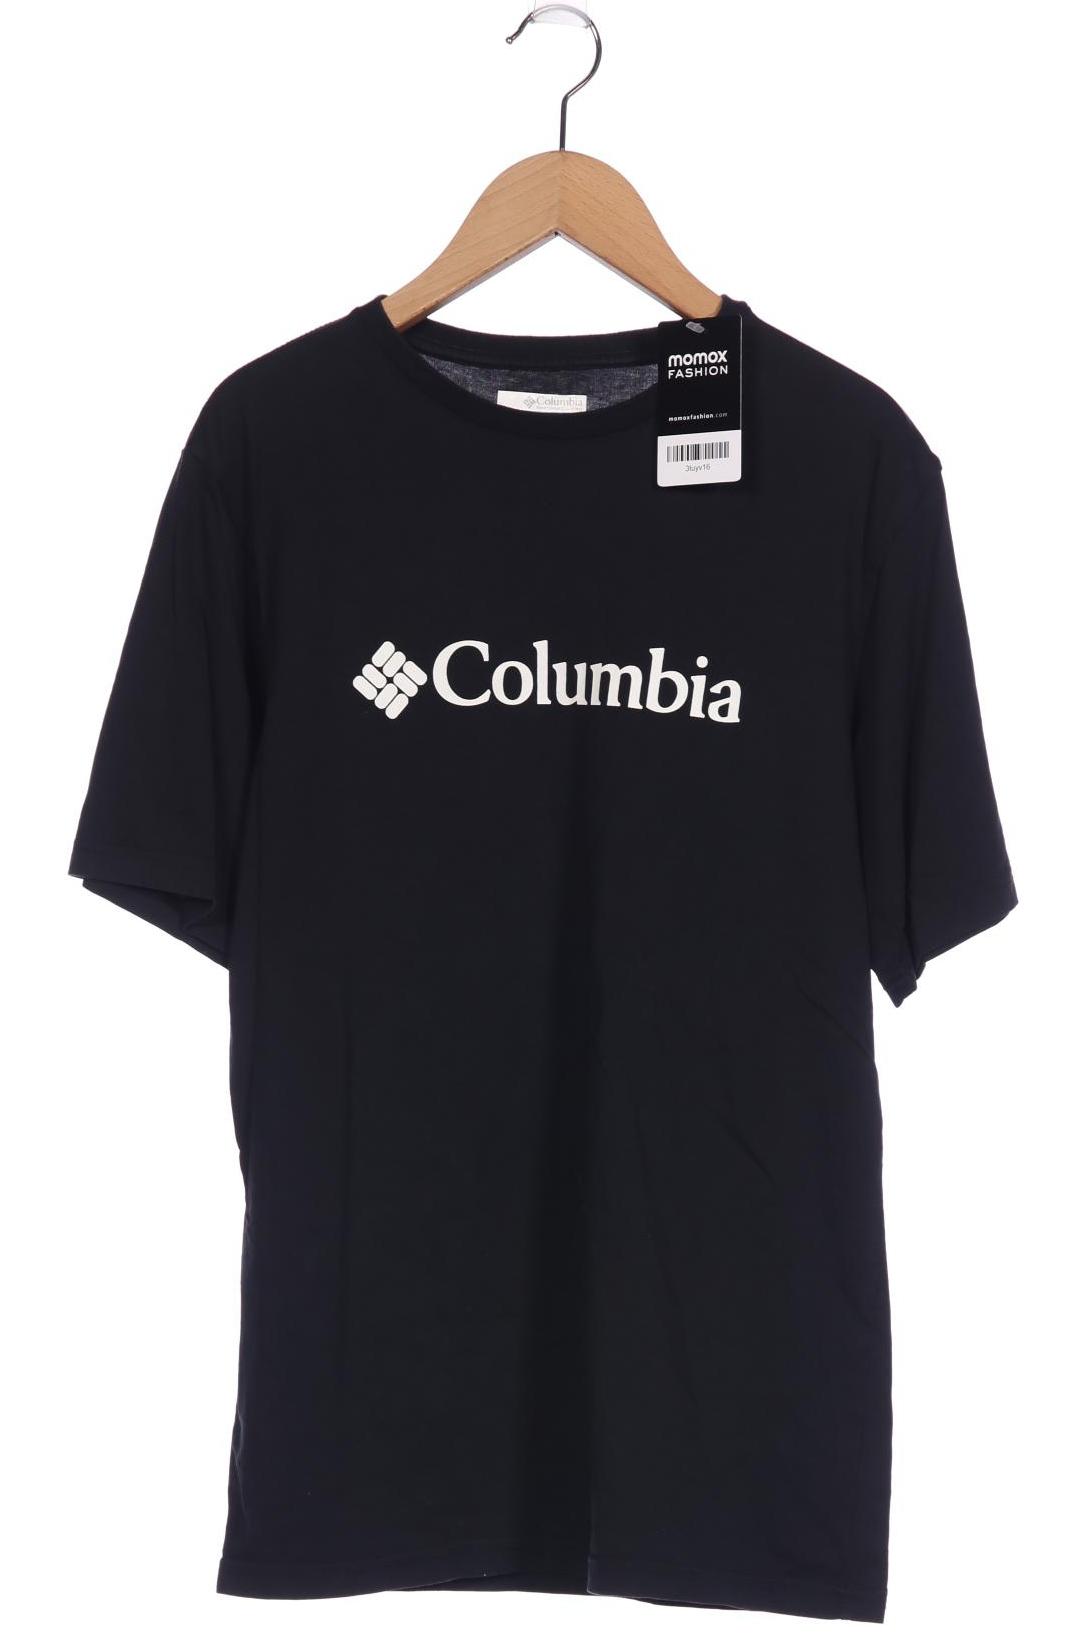 Columbia Herren T-Shirt, schwarz, Gr. 46 von Columbia